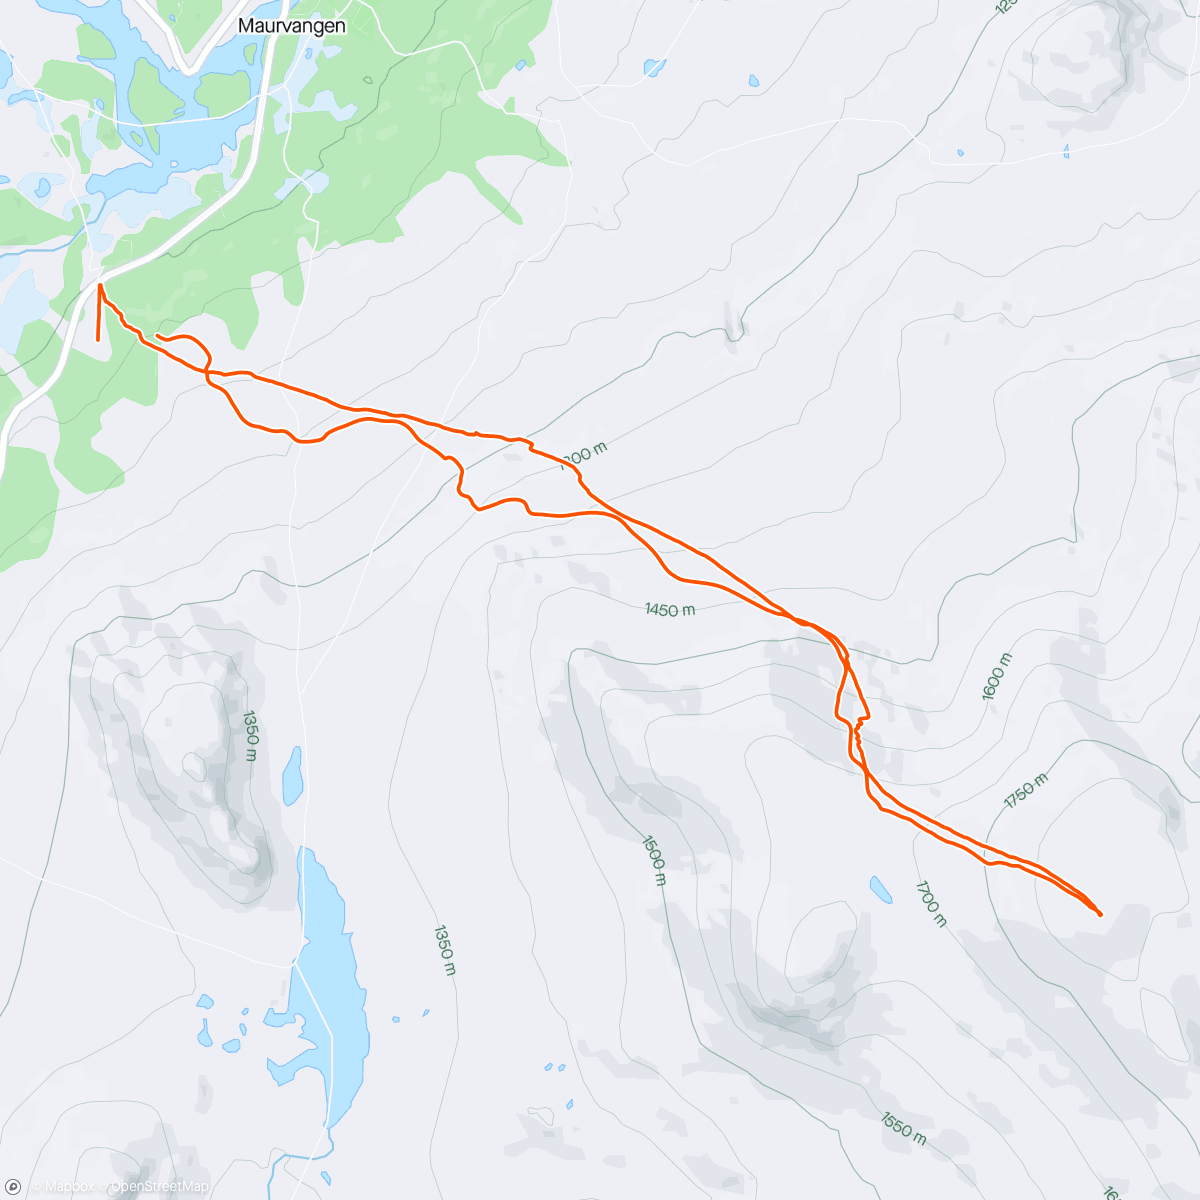 「Topptur Heimdalshøe 1843m」活動的地圖